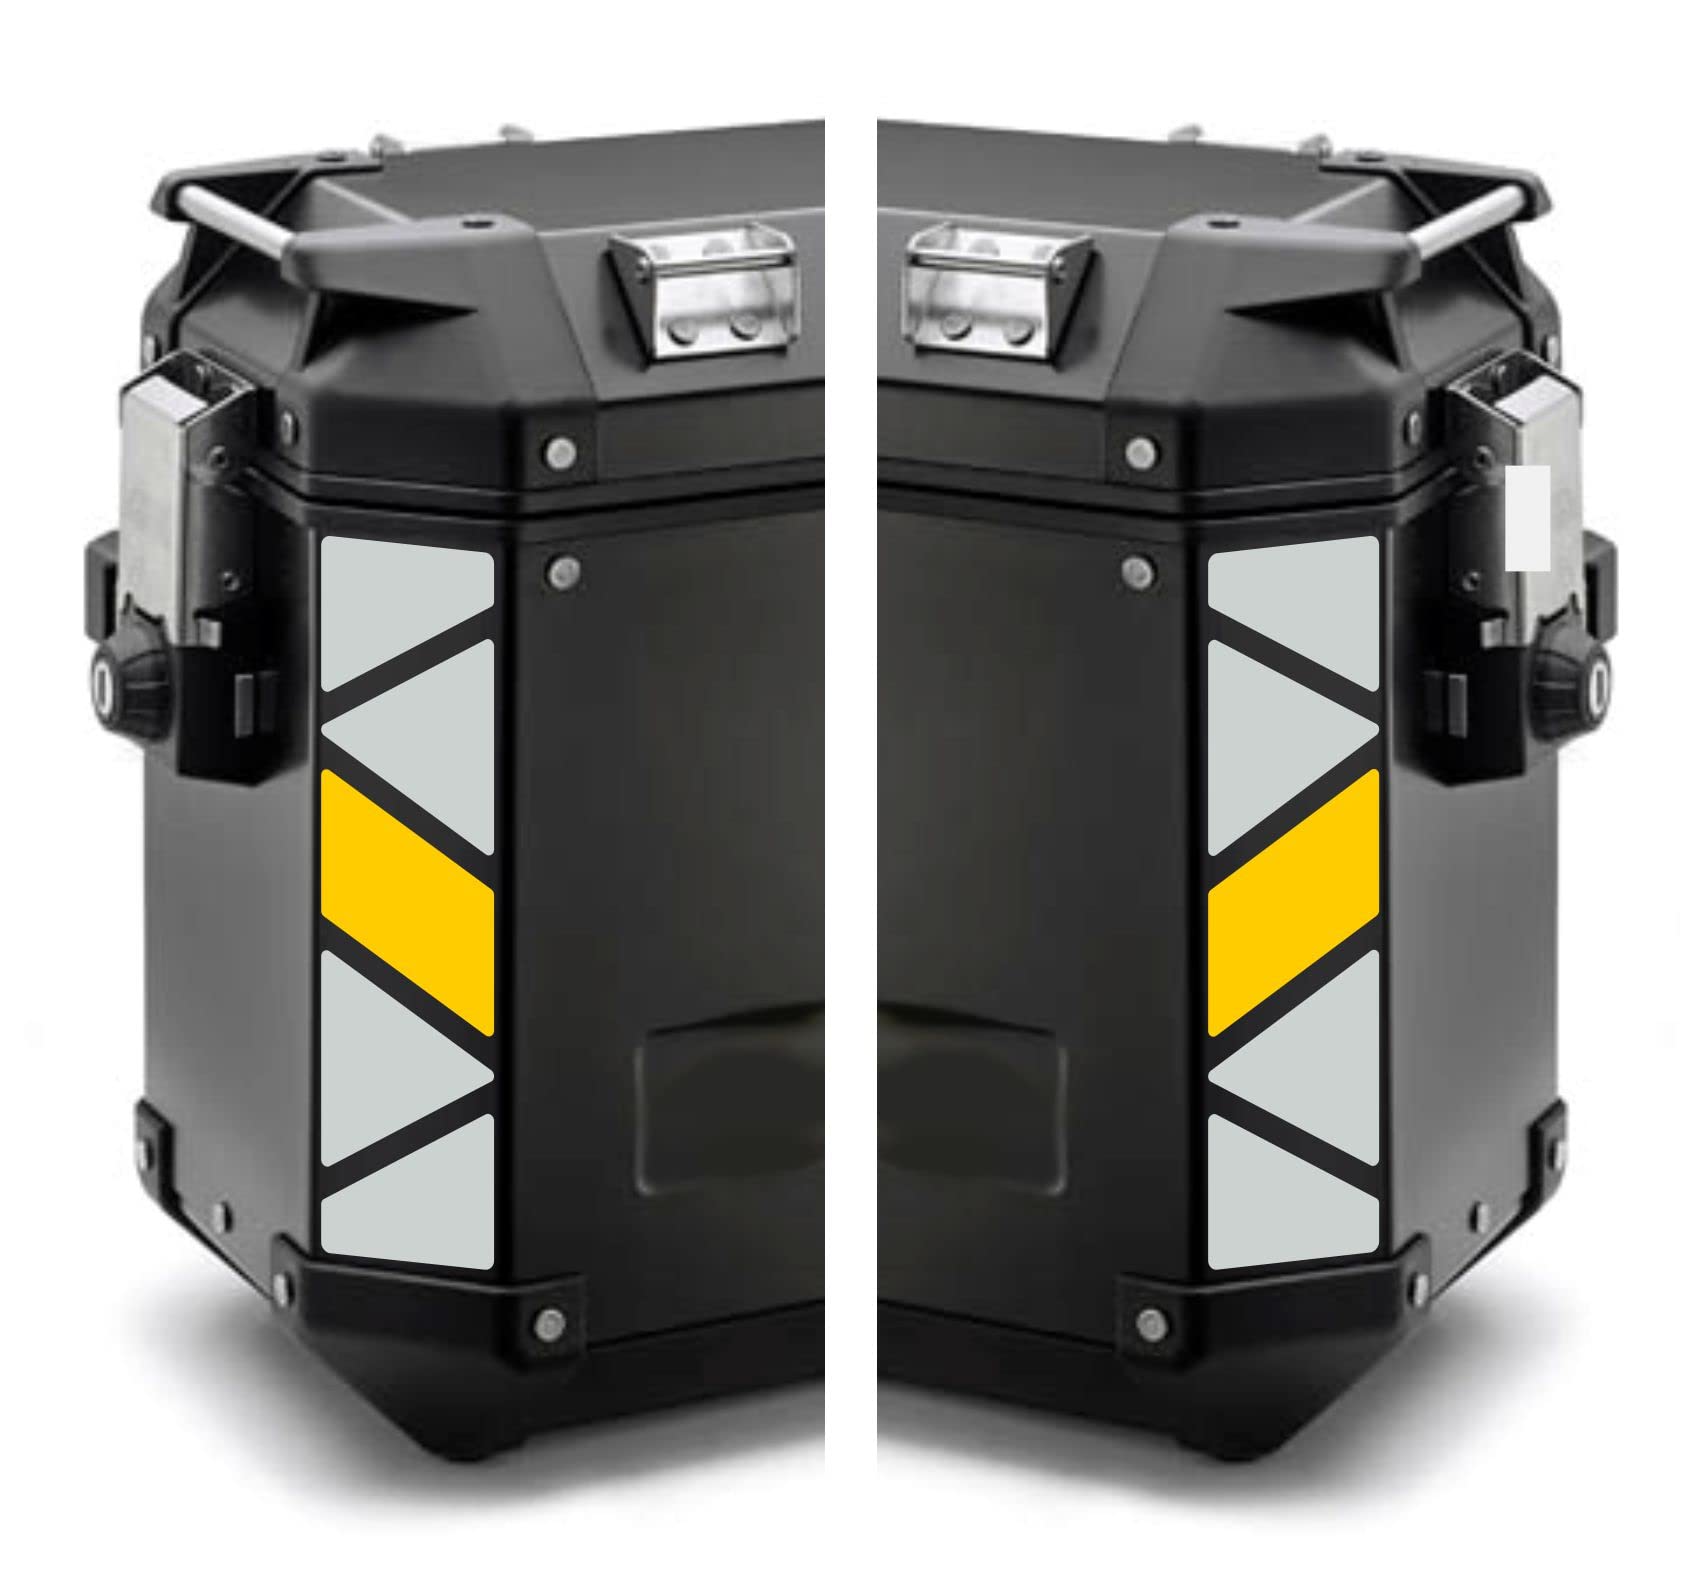 Reflektoren, zweifarbig, kompatibel mit Seitenkoffer GIVI TREKKER OUTBACK 48 37 ltr Motorrad (weiß-gelb) von BLACK DOVES GRAPHICS